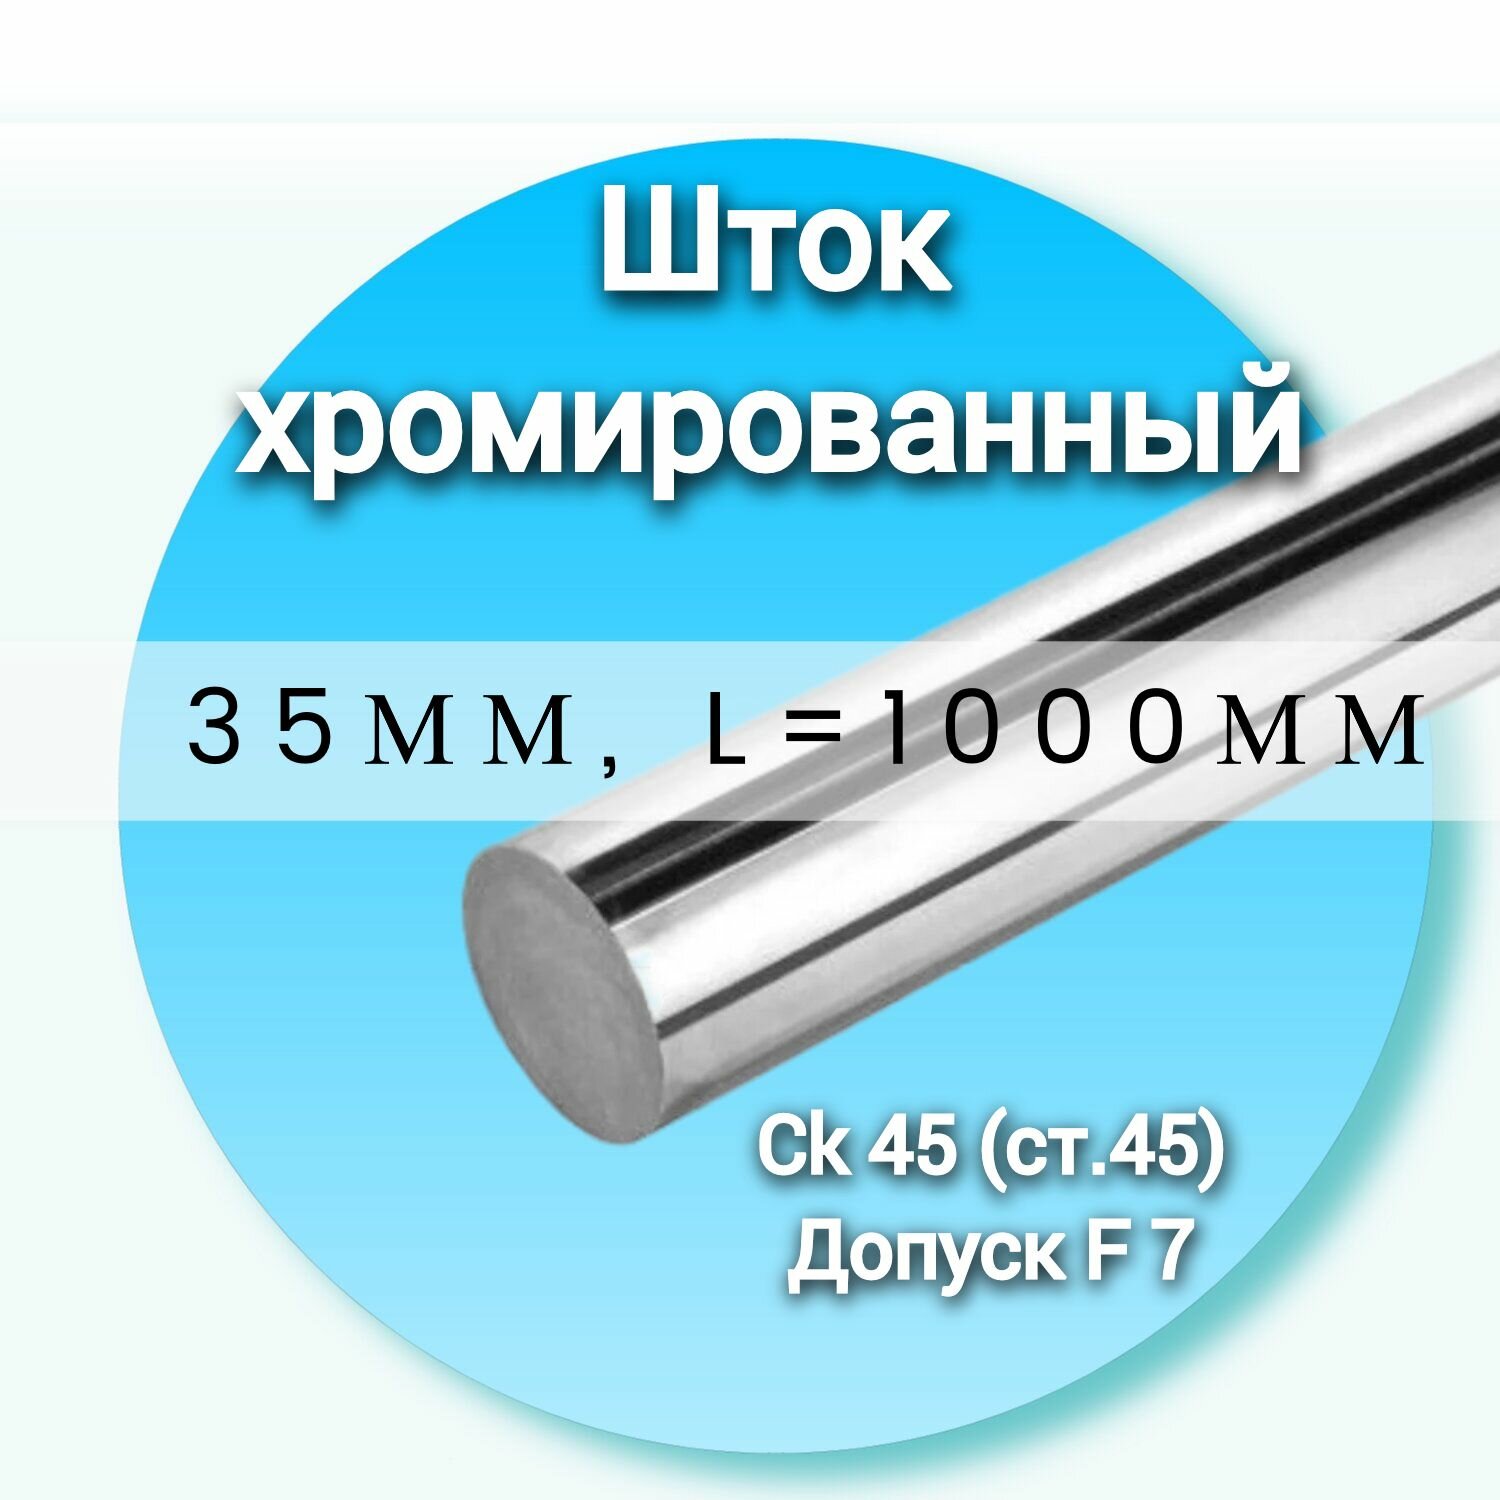 Шток хромированный СК45 f7 35*1000мм / Шток гидроцилиндра 35мм